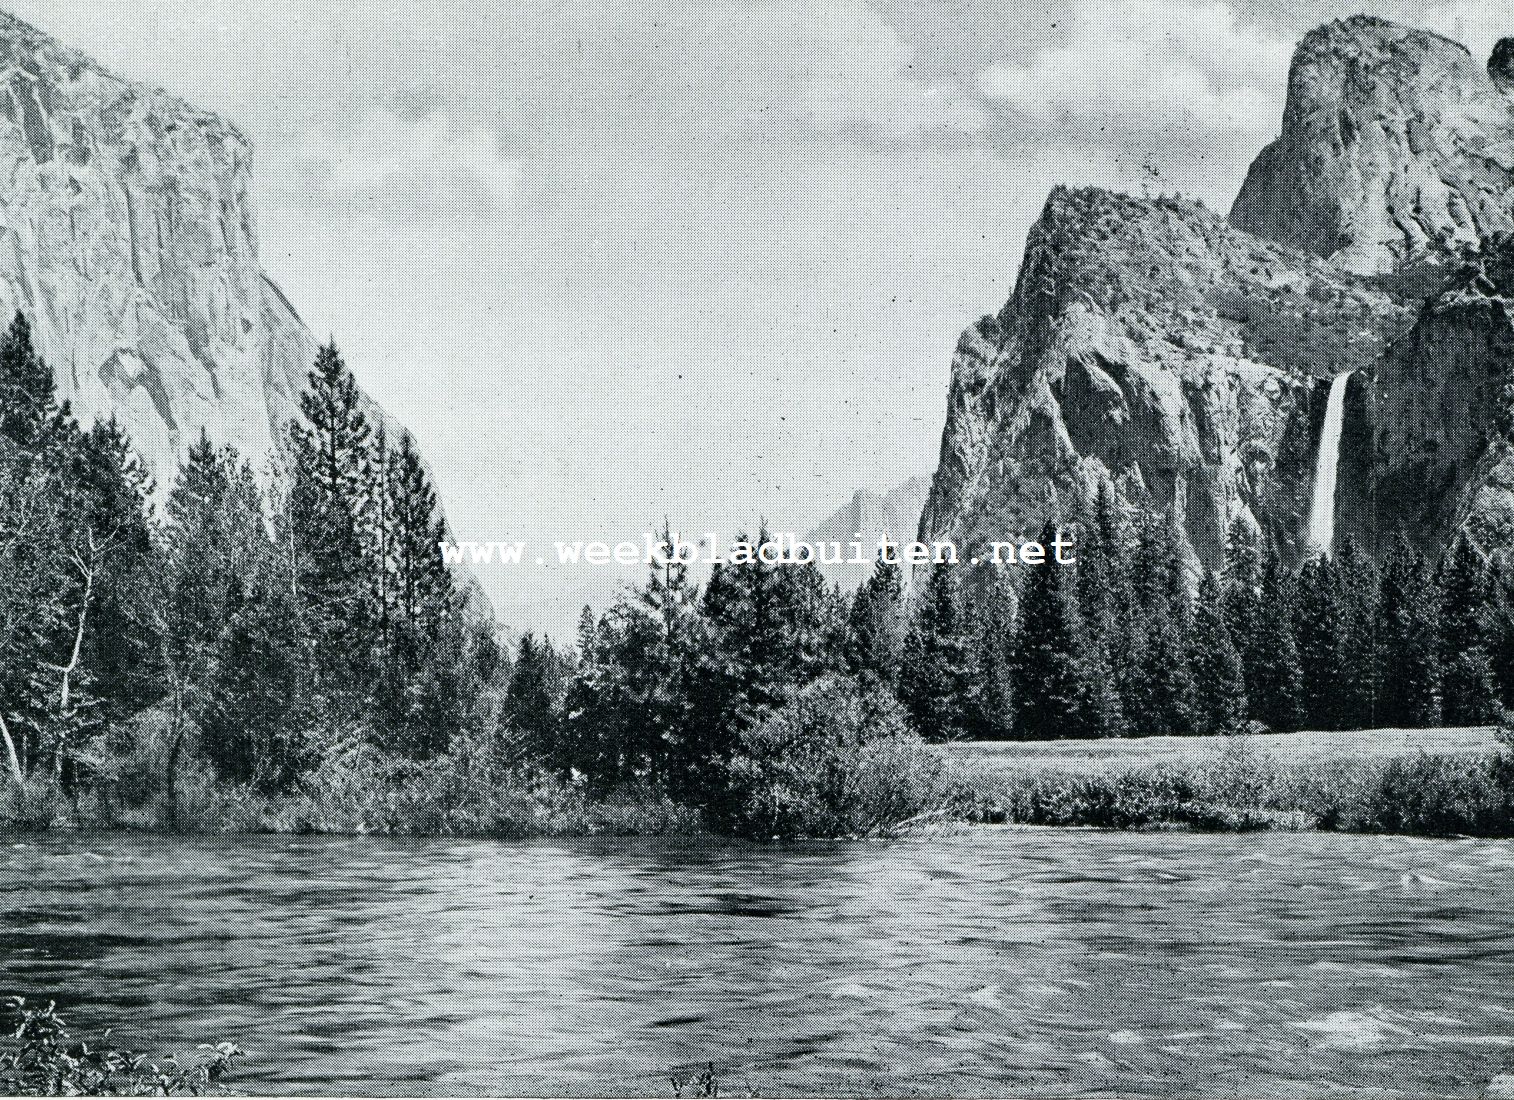 De Yo-sem-i-ties, hun vallei en de reuzen van Mariposa. Ingang tot de Yosemite-Vallei met Bridal Veil Falls